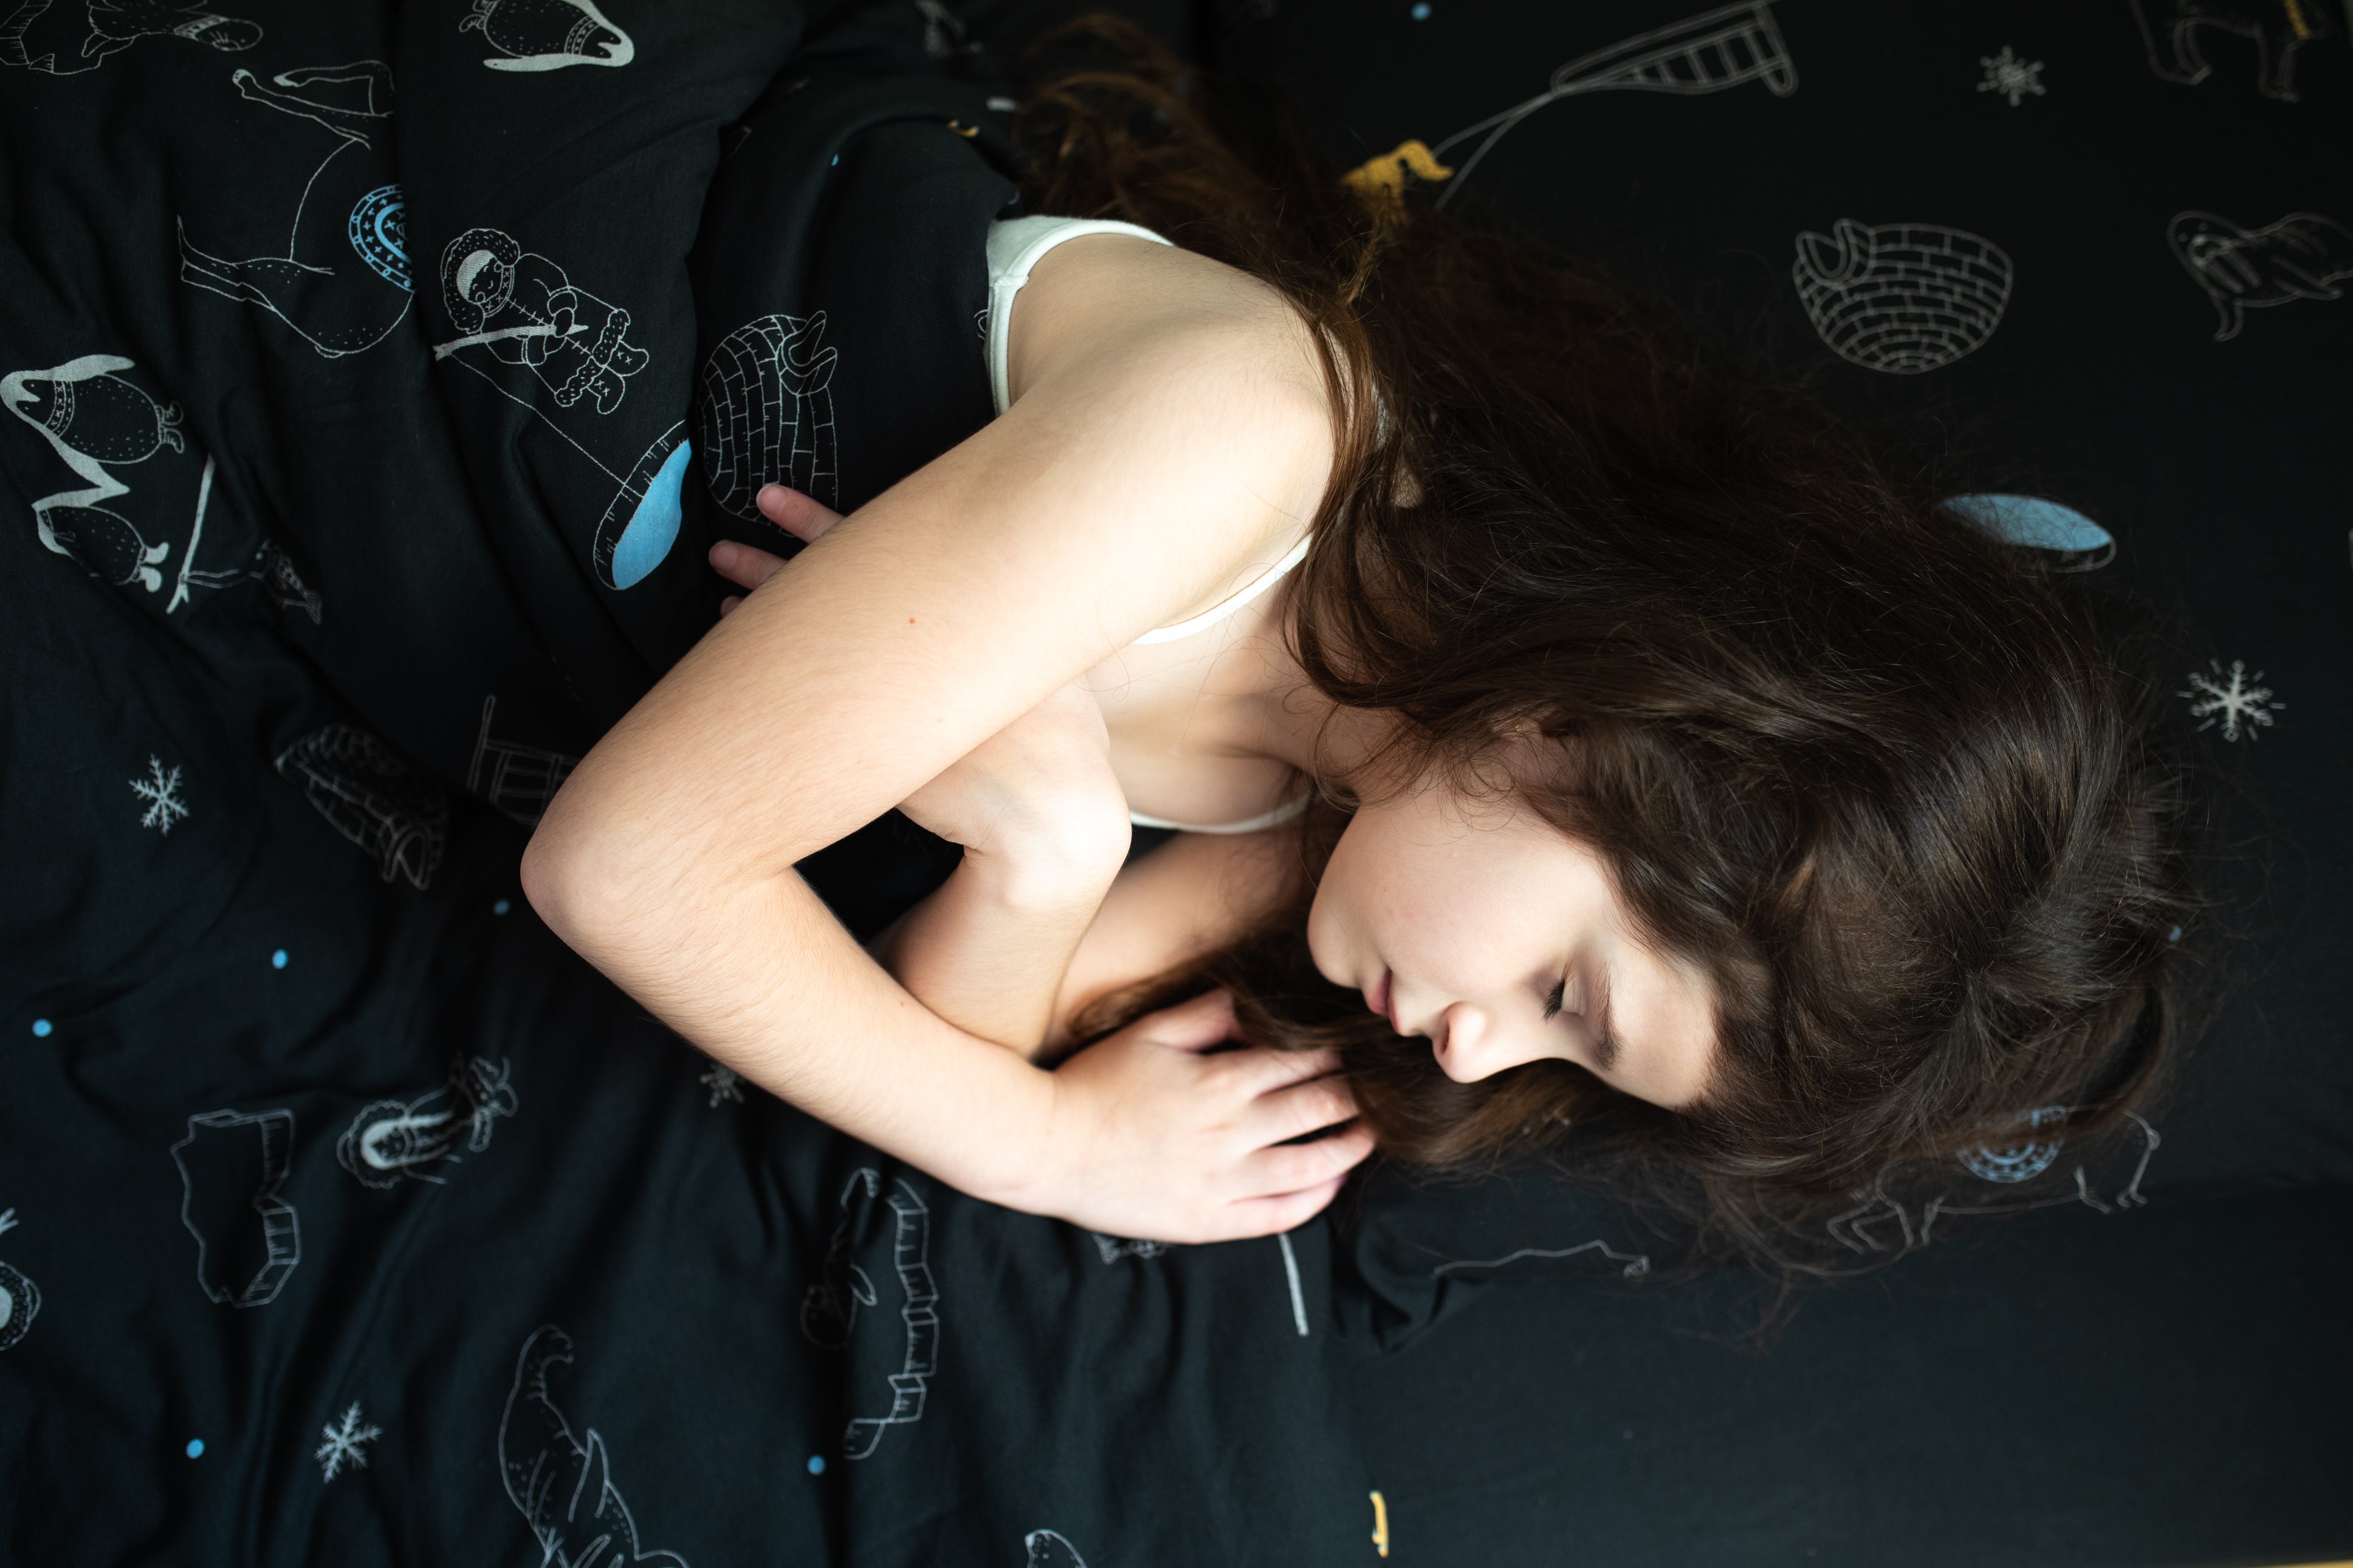 סט מצעים למיטת נוער, ציפה וציפית בצבע שחור משופשף עם הדפס מתחת לאפס - NDOTO TEXTILE